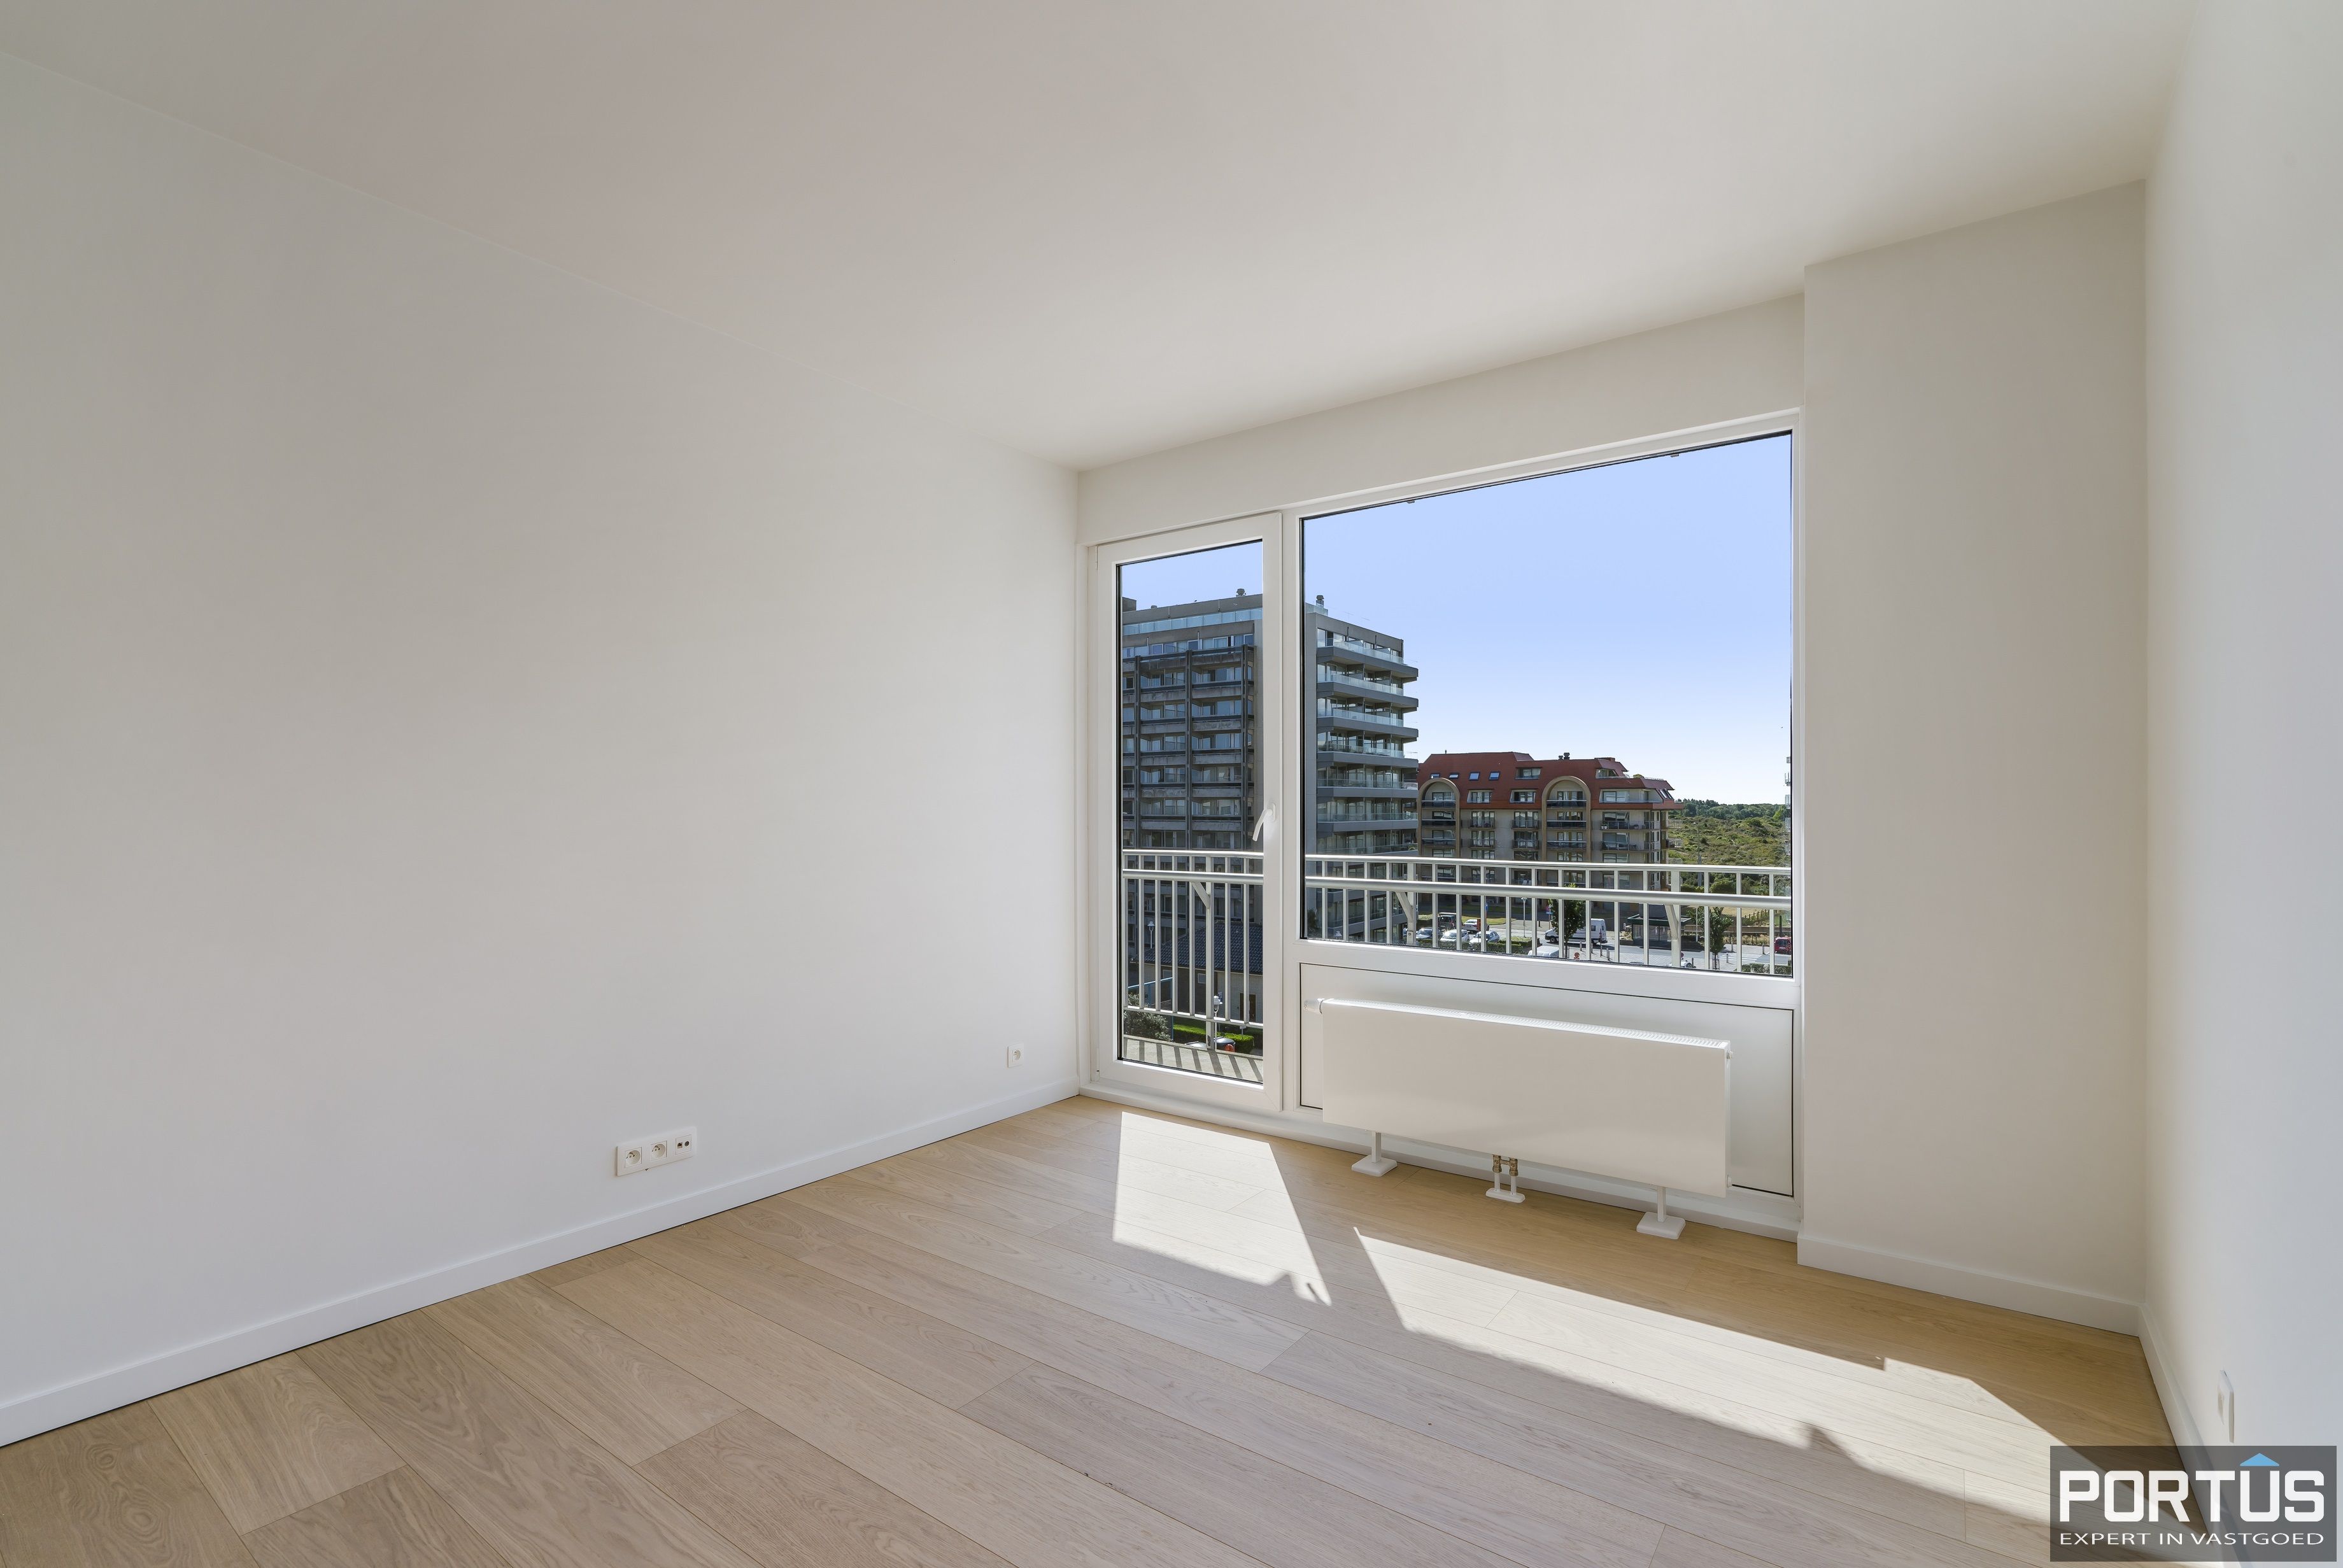 Exclusief appartement met frontaal zeezicht te koop te Nieuwpoort - 15599